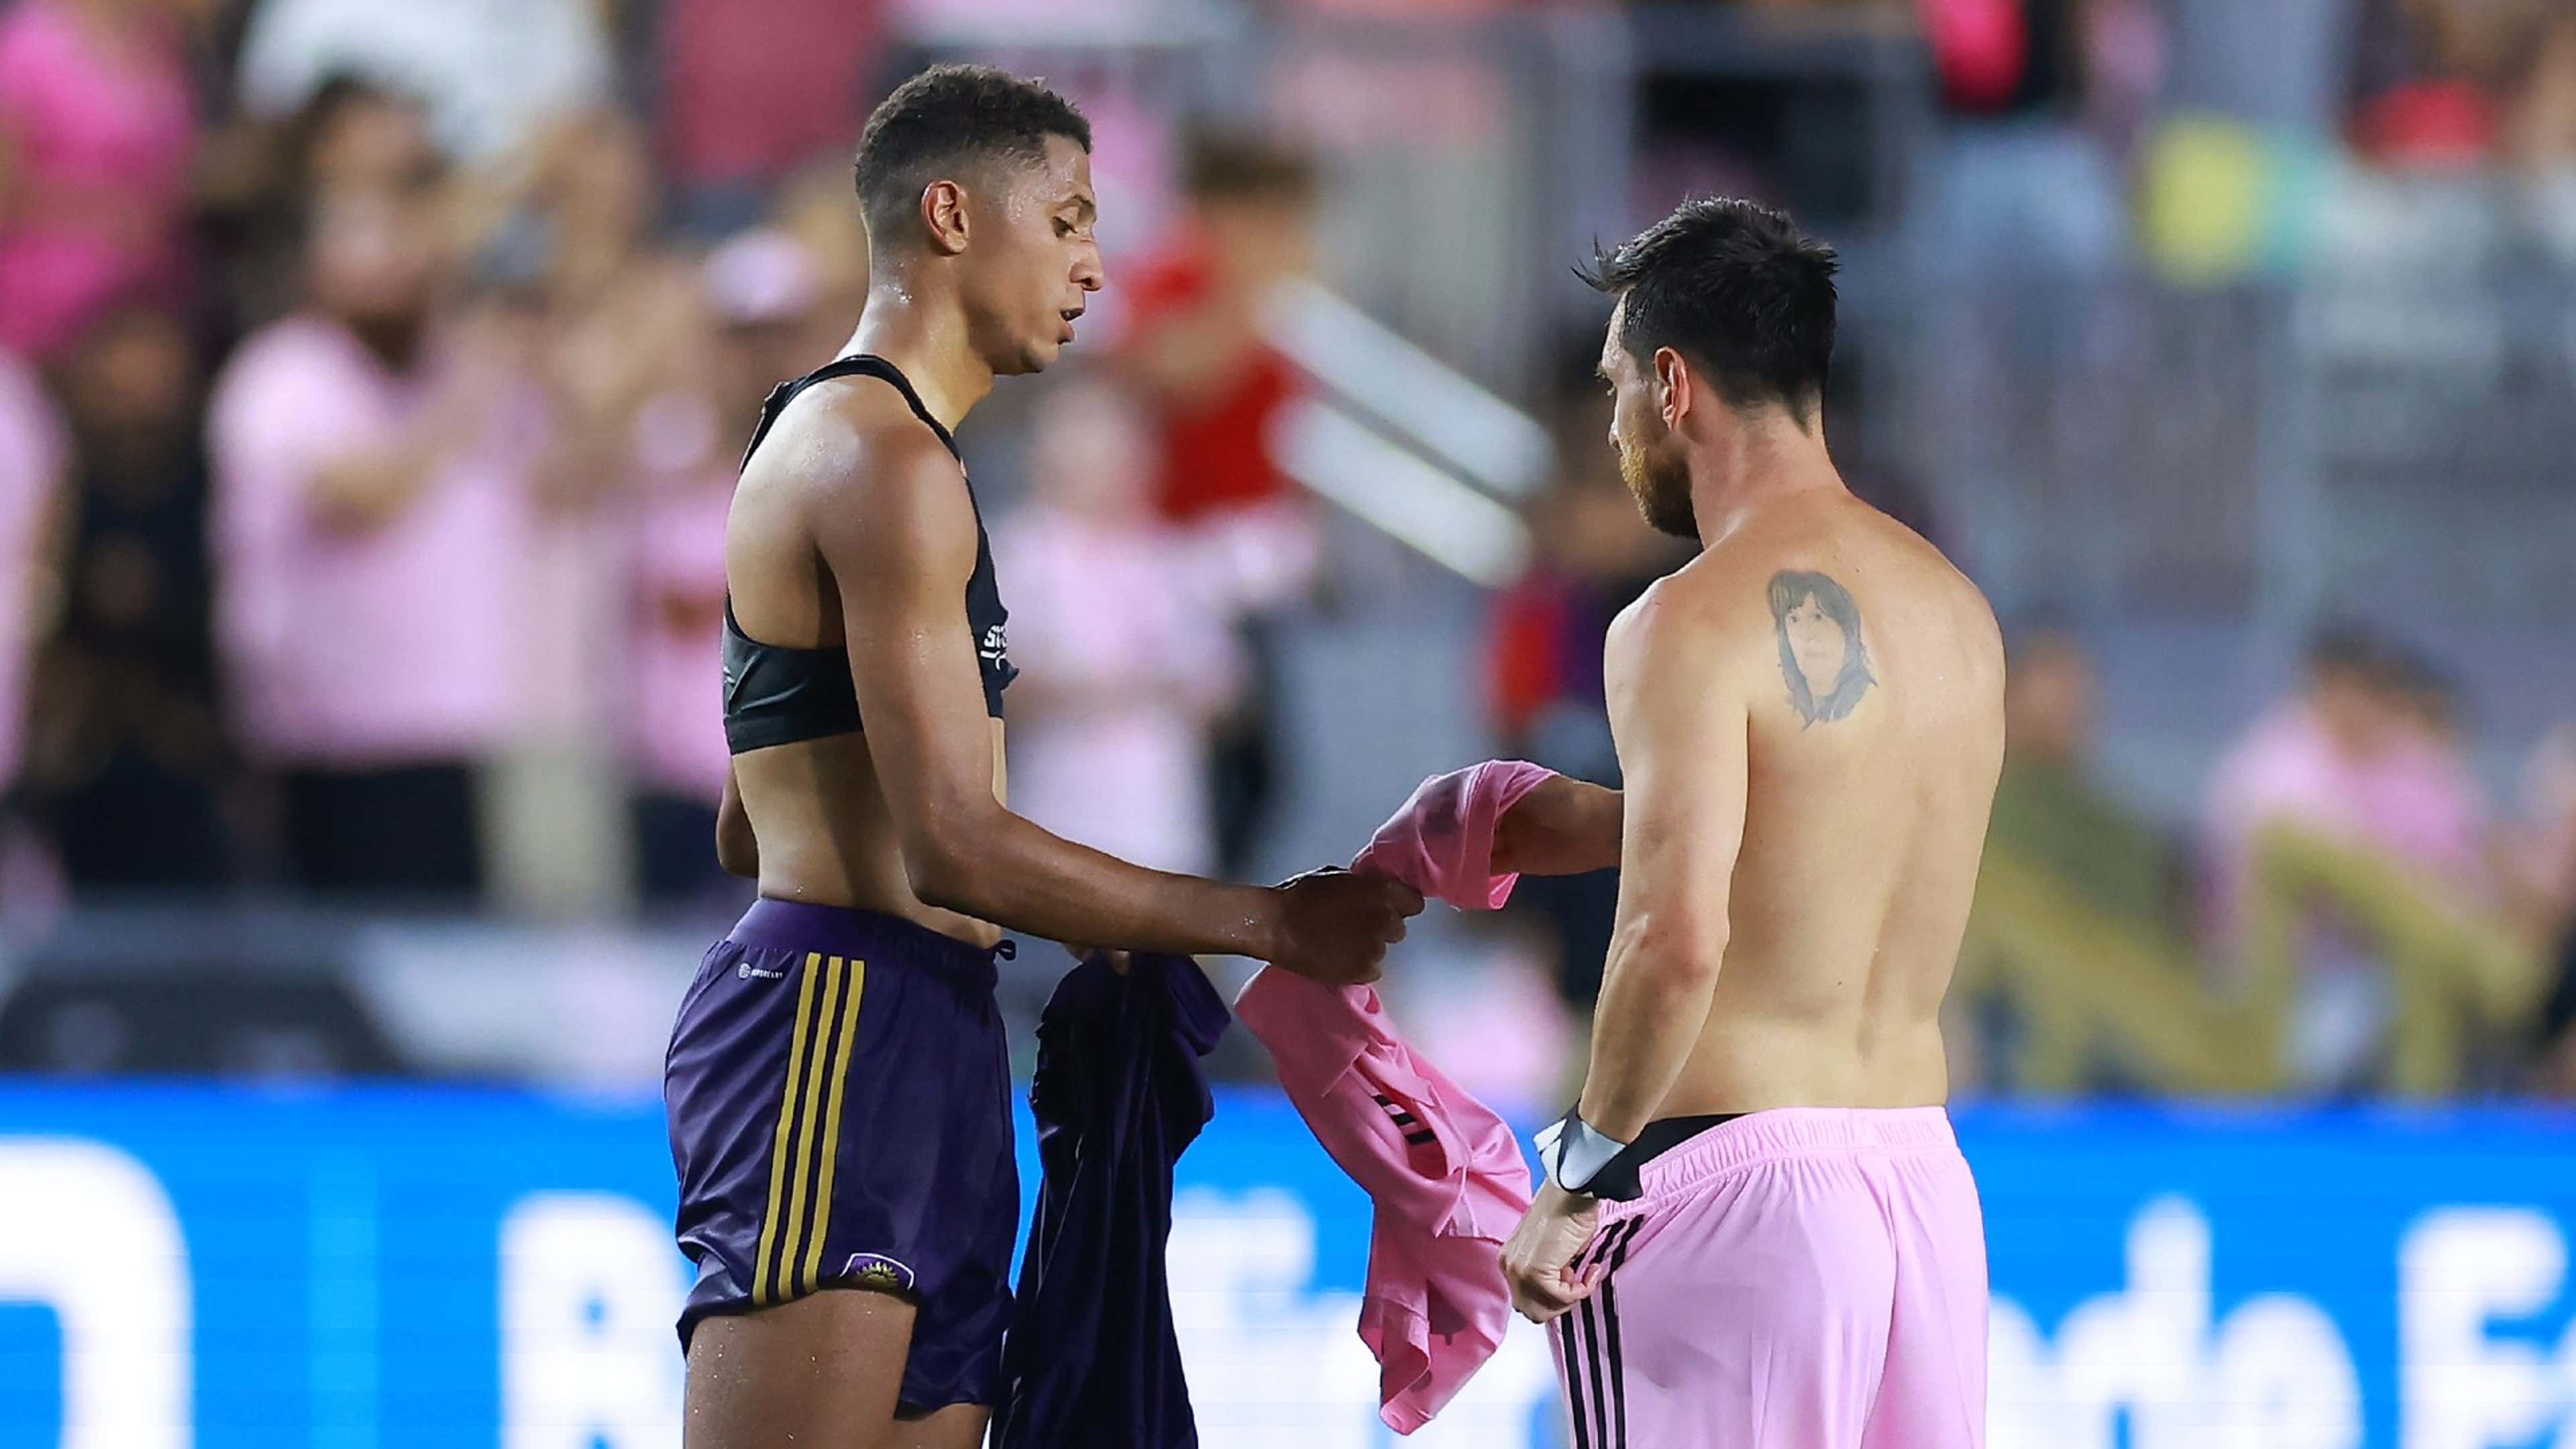 Thiago Almada Powers Atlanta United To Three Points In Rainy Orlando